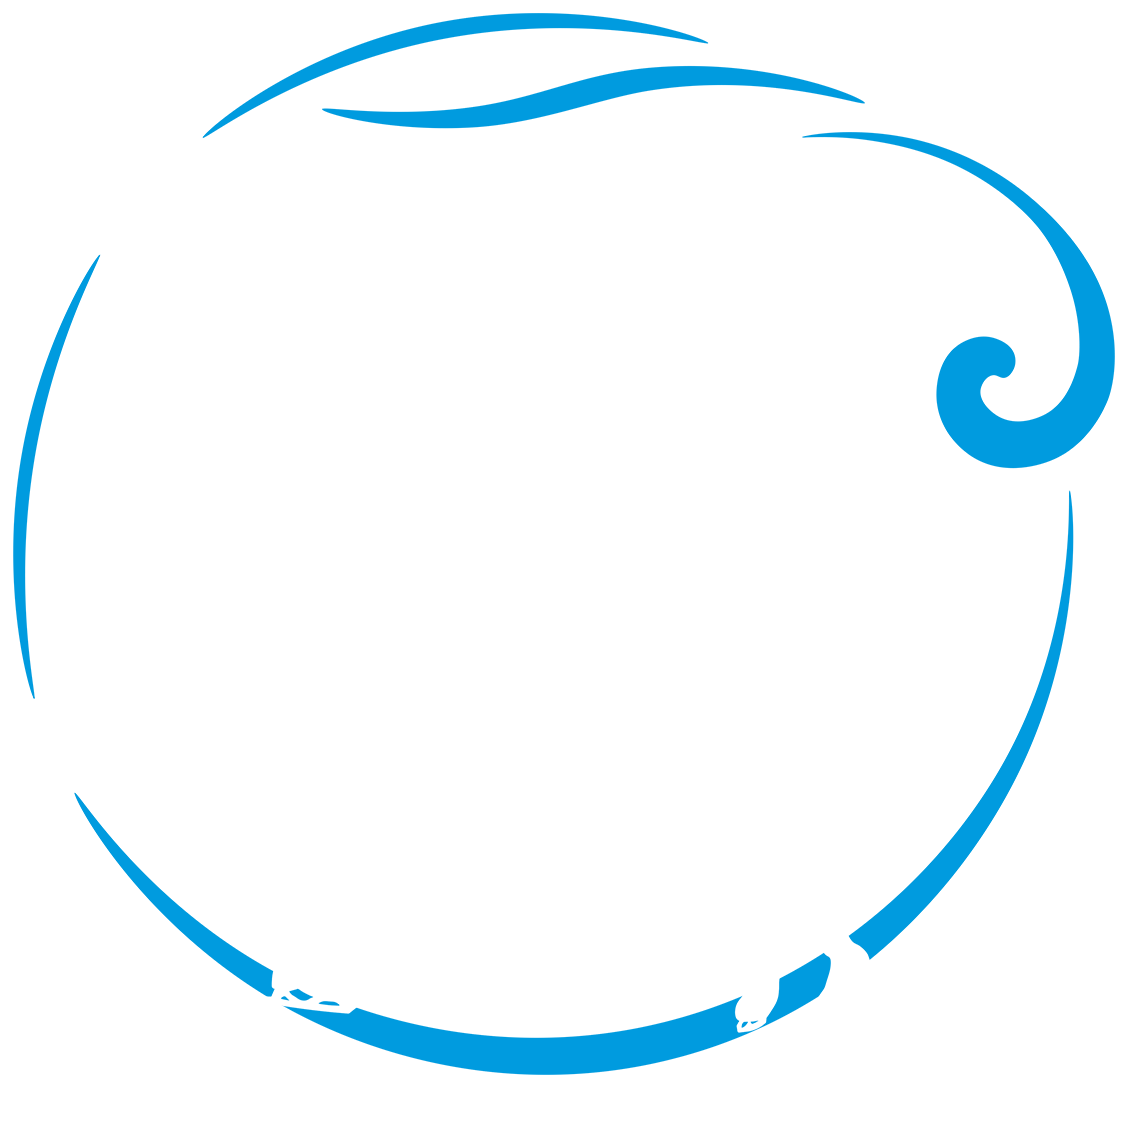 Wellington Figure Skating Club